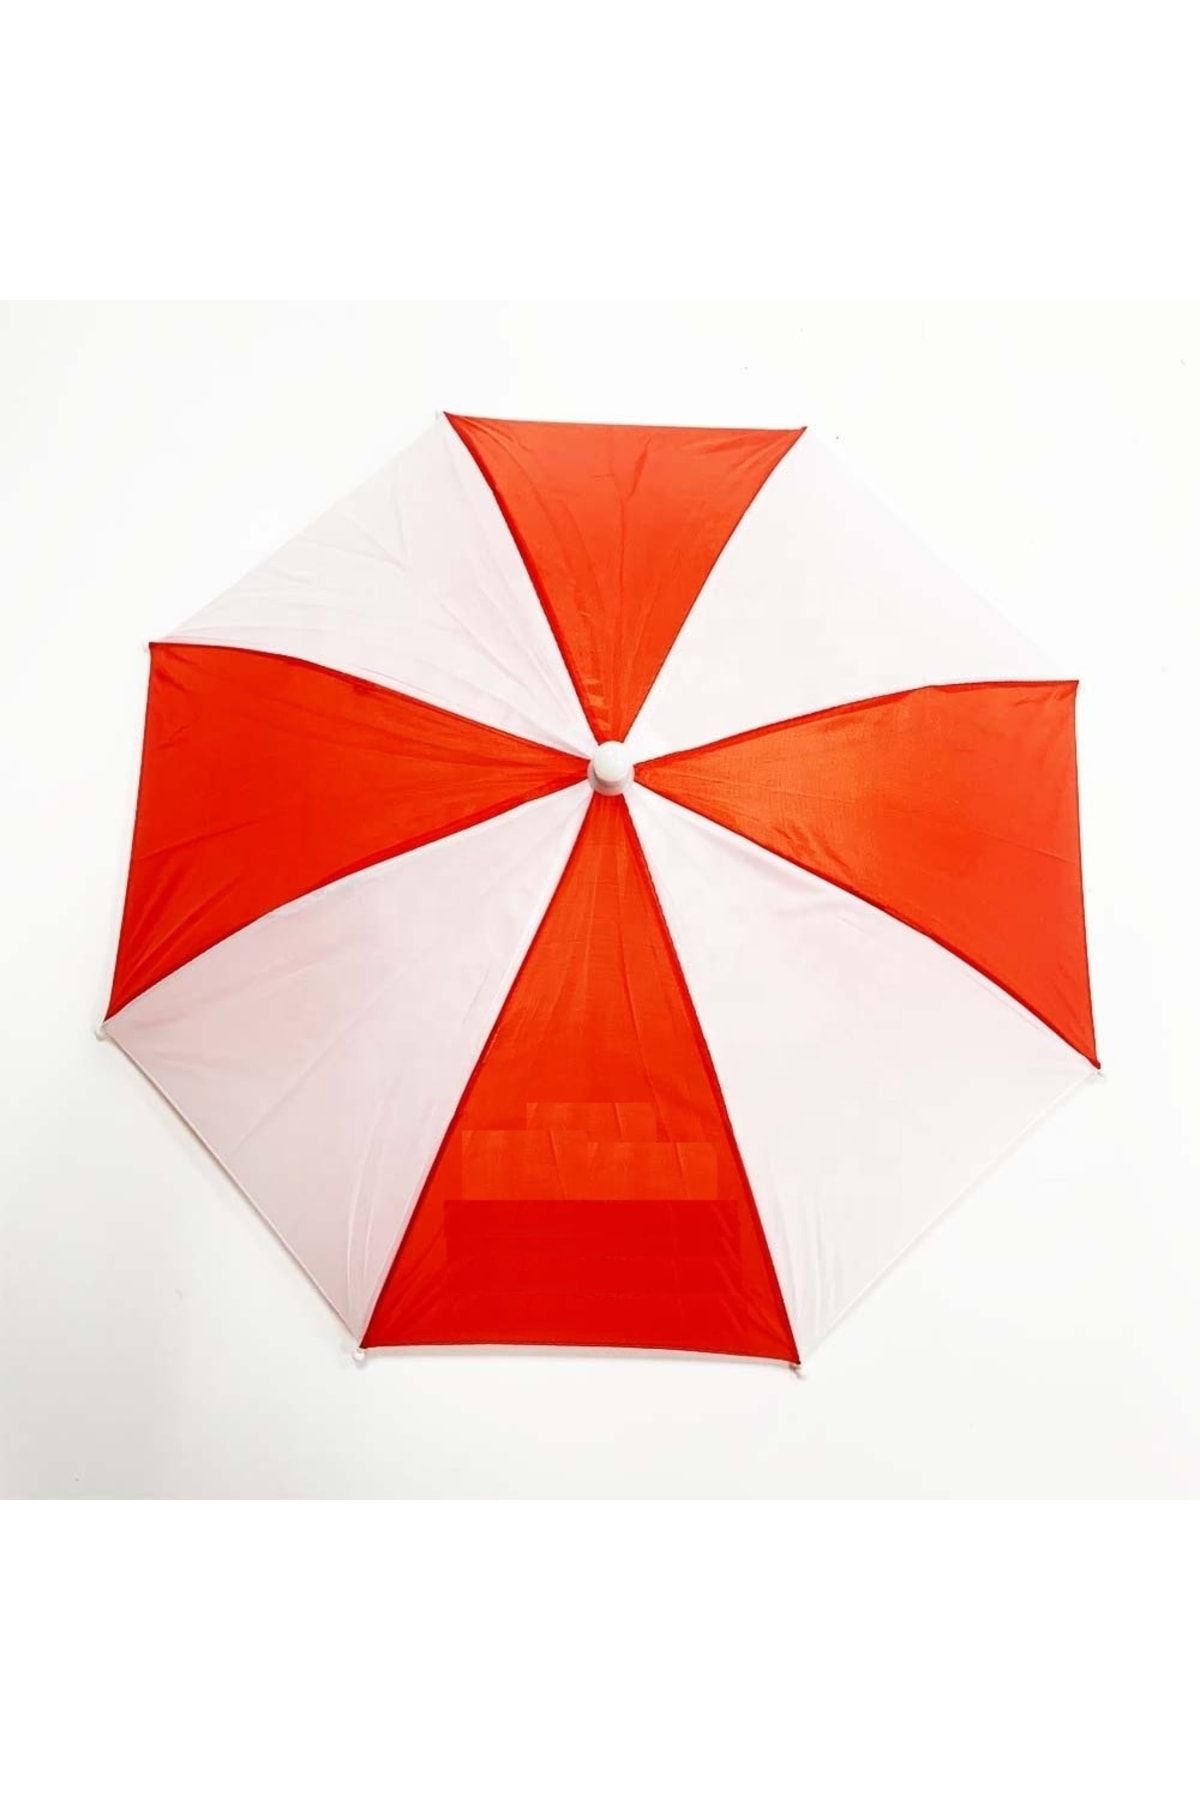 ELEVEN MARKETS Kırmızı Beyaz Lastikli Plaj Yazlık Kafa Şemsiyesi Eğlenceli Şapka Şemsiye Güneş Koruyucu